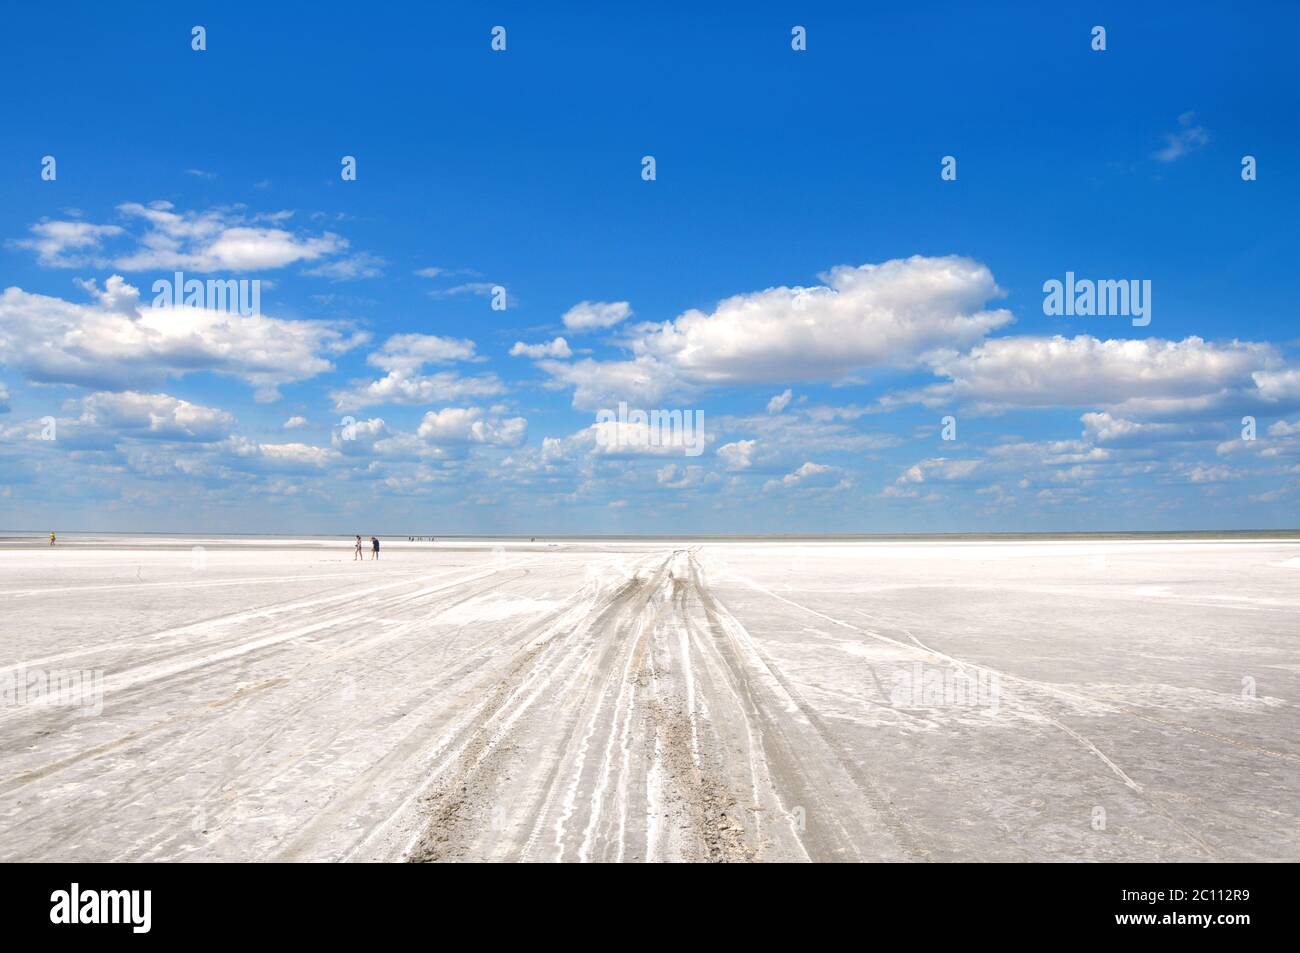 Der Weg zum Elton See, dem größten Salzsee Europas, liegt in Russland im Wolgograd Oblast Stockfoto